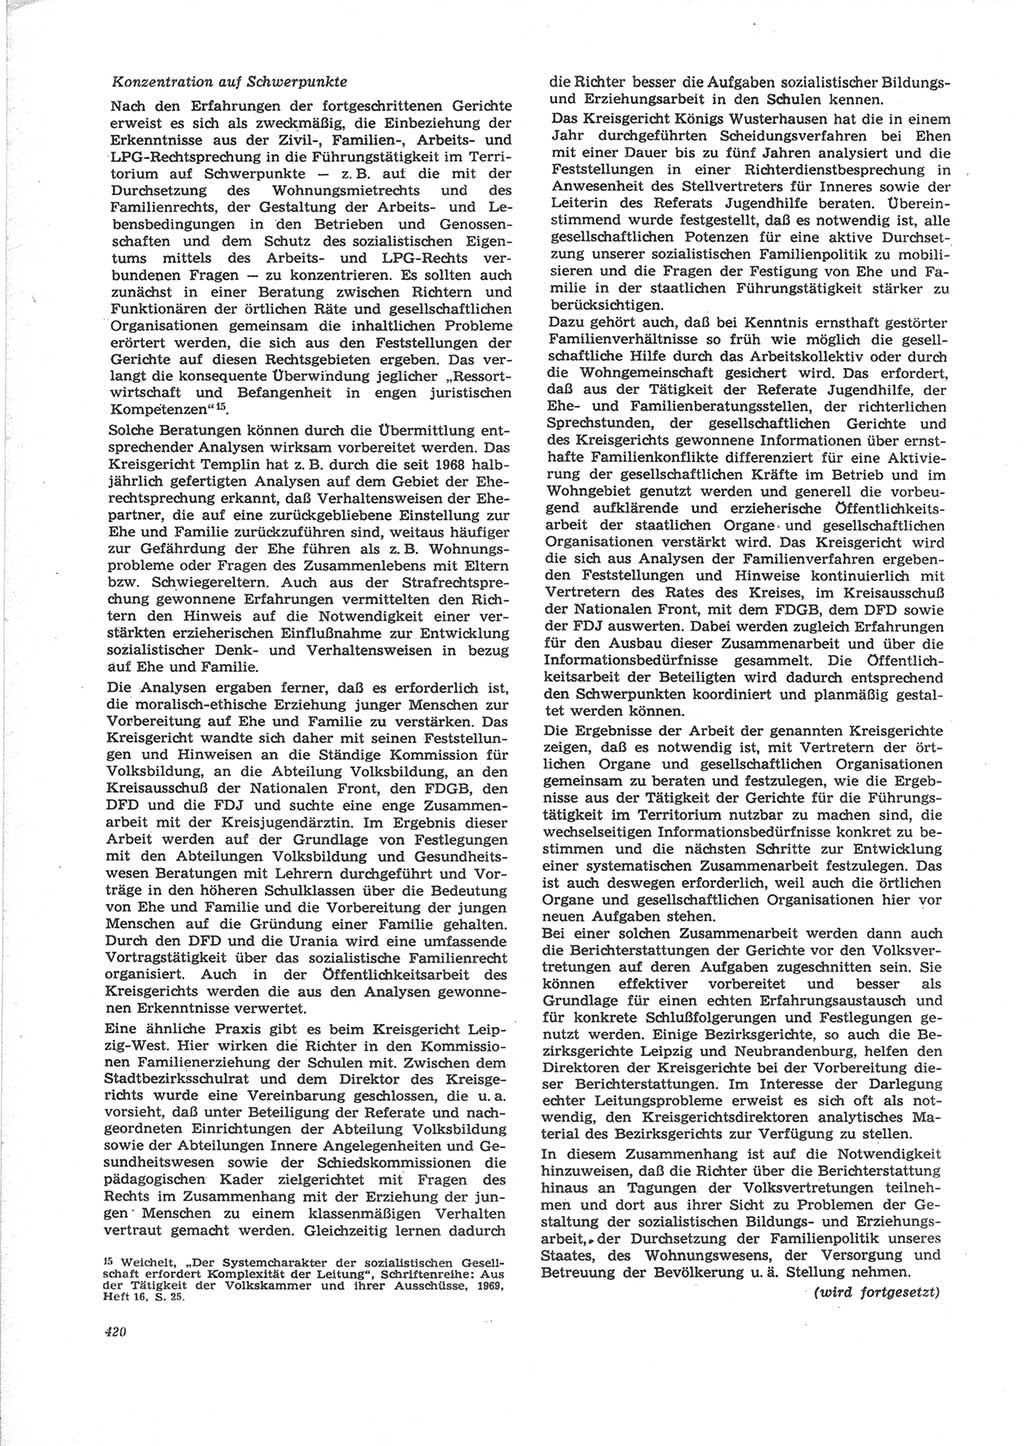 Neue Justiz (NJ), Zeitschrift für Recht und Rechtswissenschaft [Deutsche Demokratische Republik (DDR)], 24. Jahrgang 1970, Seite 420 (NJ DDR 1970, S. 420)